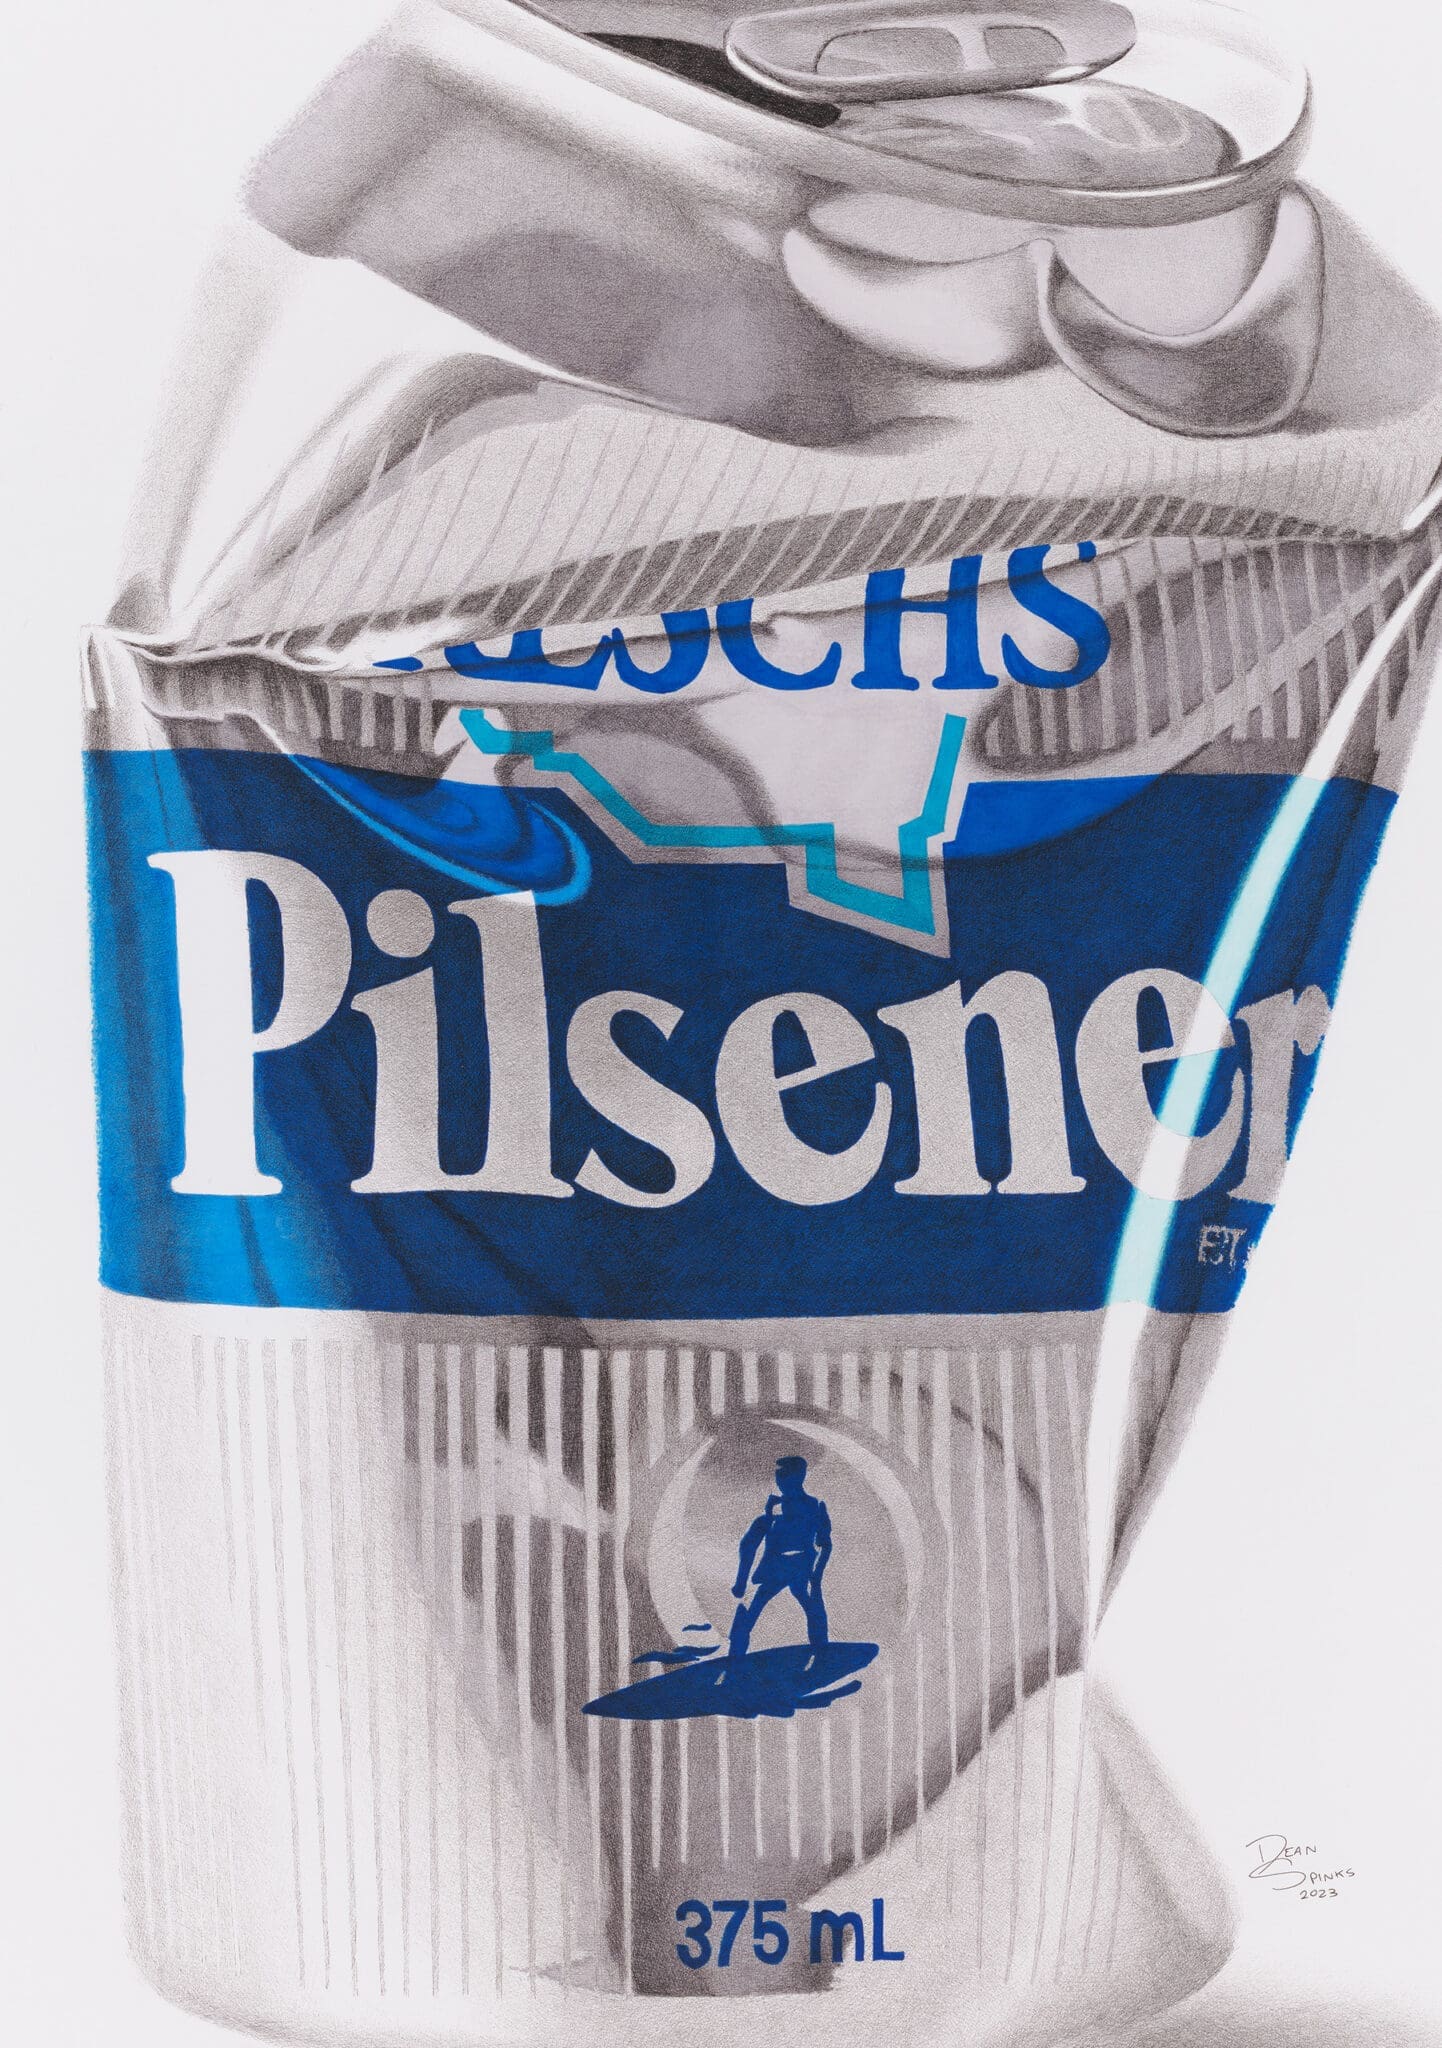 Crushed Reschs Pilsener beer can artwork by Dean Spinks